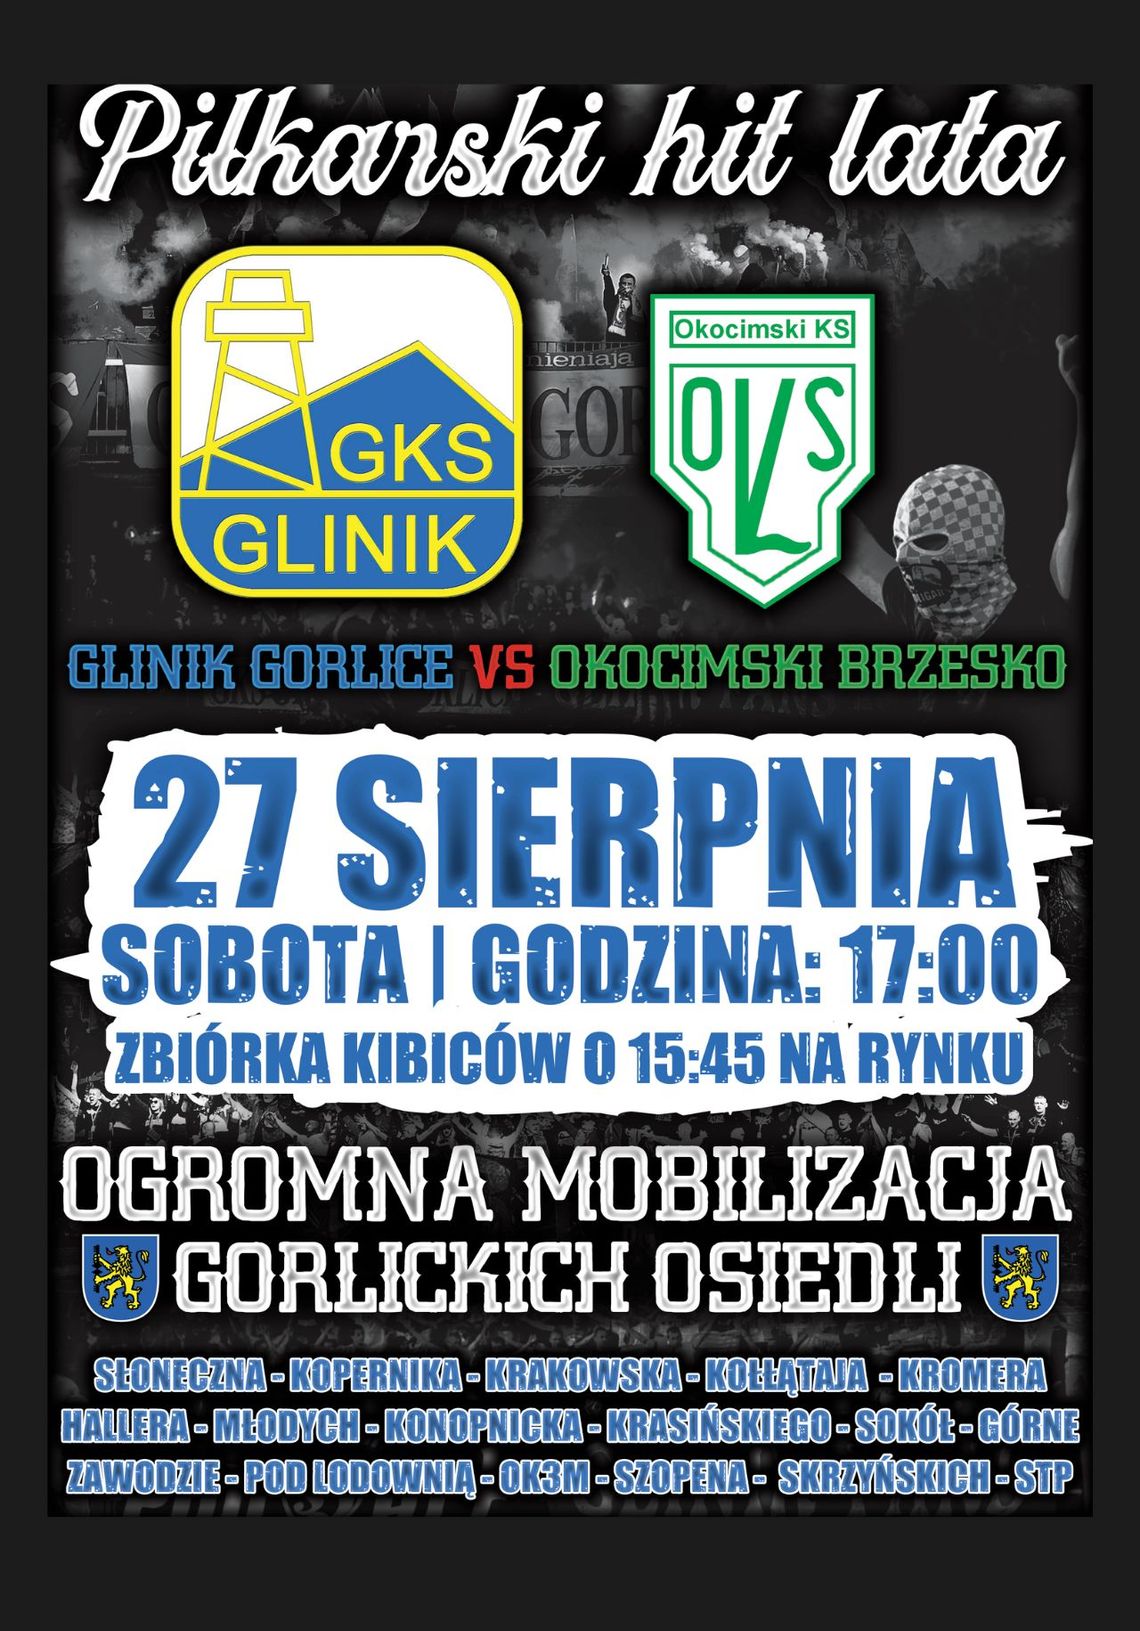 Piłkarski hit lata! GKS Glinik Gorlice vs Okocimski KS Brzesko | halogorlice.info